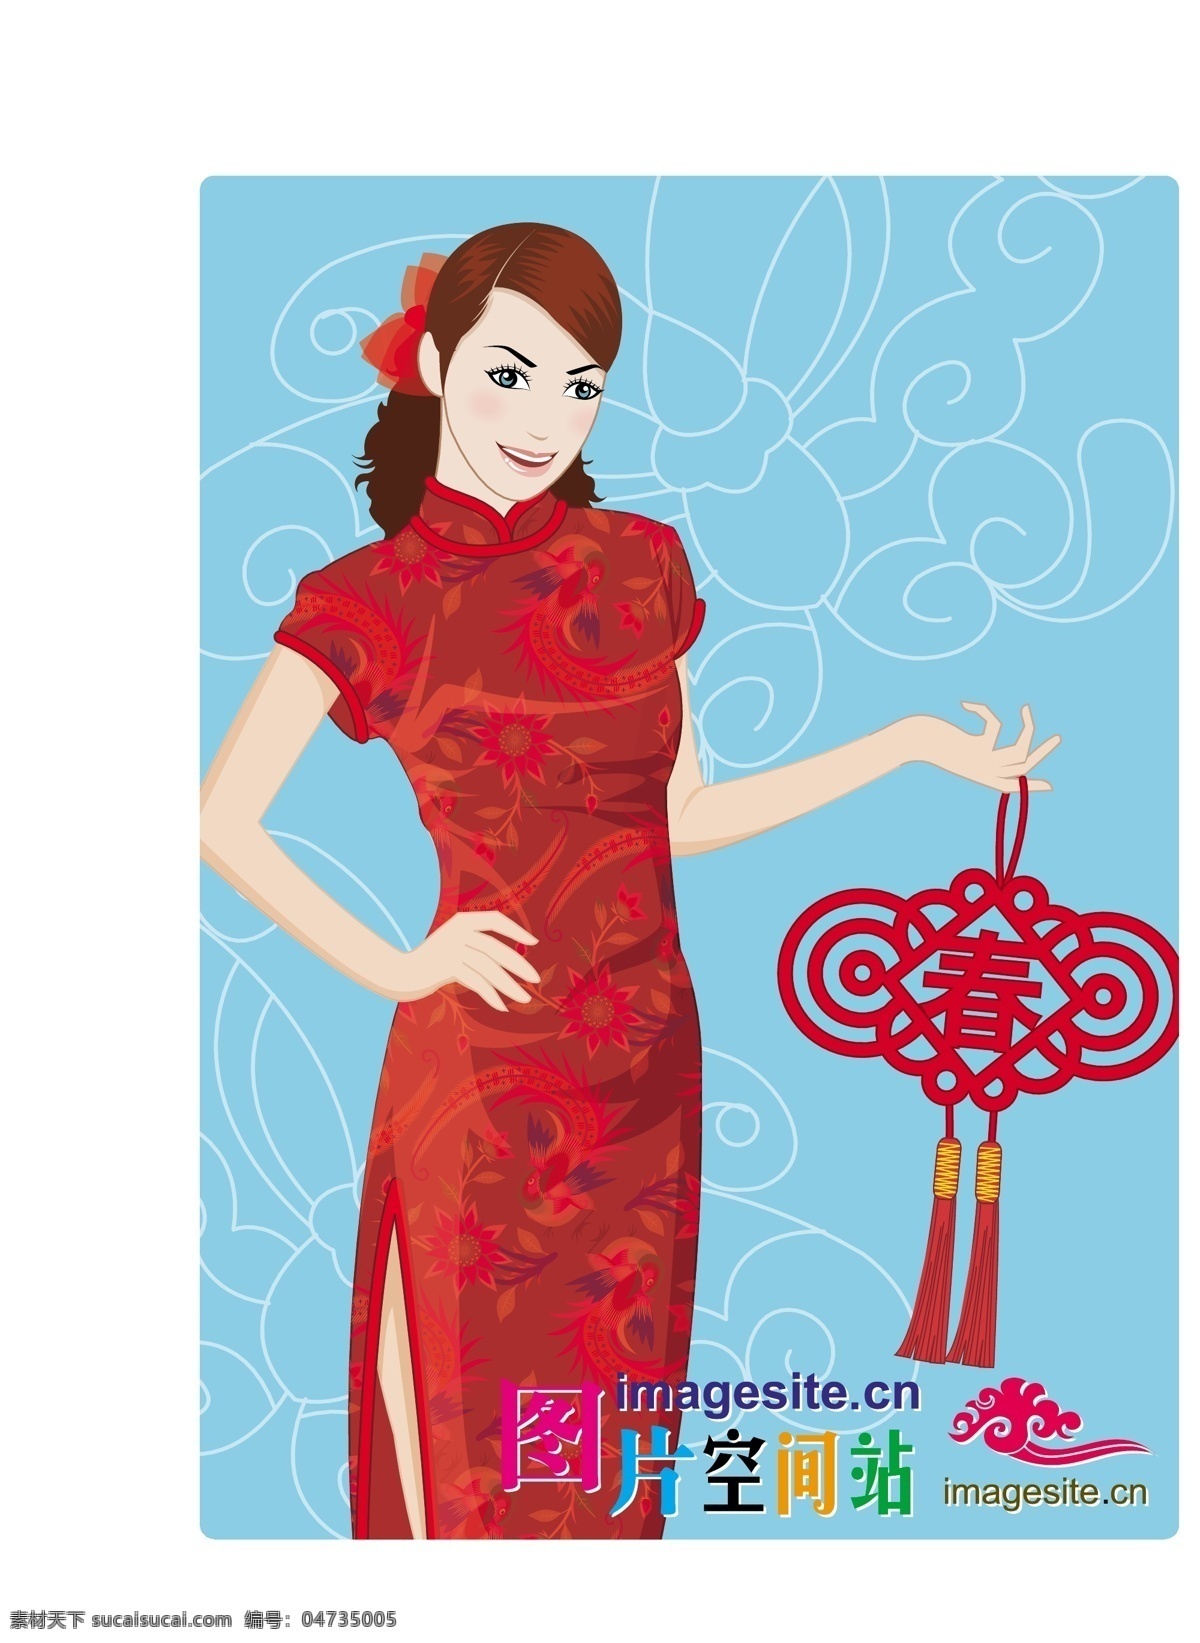 矢量旗袍美女 春节 新年 节日素材 中国结 矢量素材 矢量人物 妇女女性 矢量图库